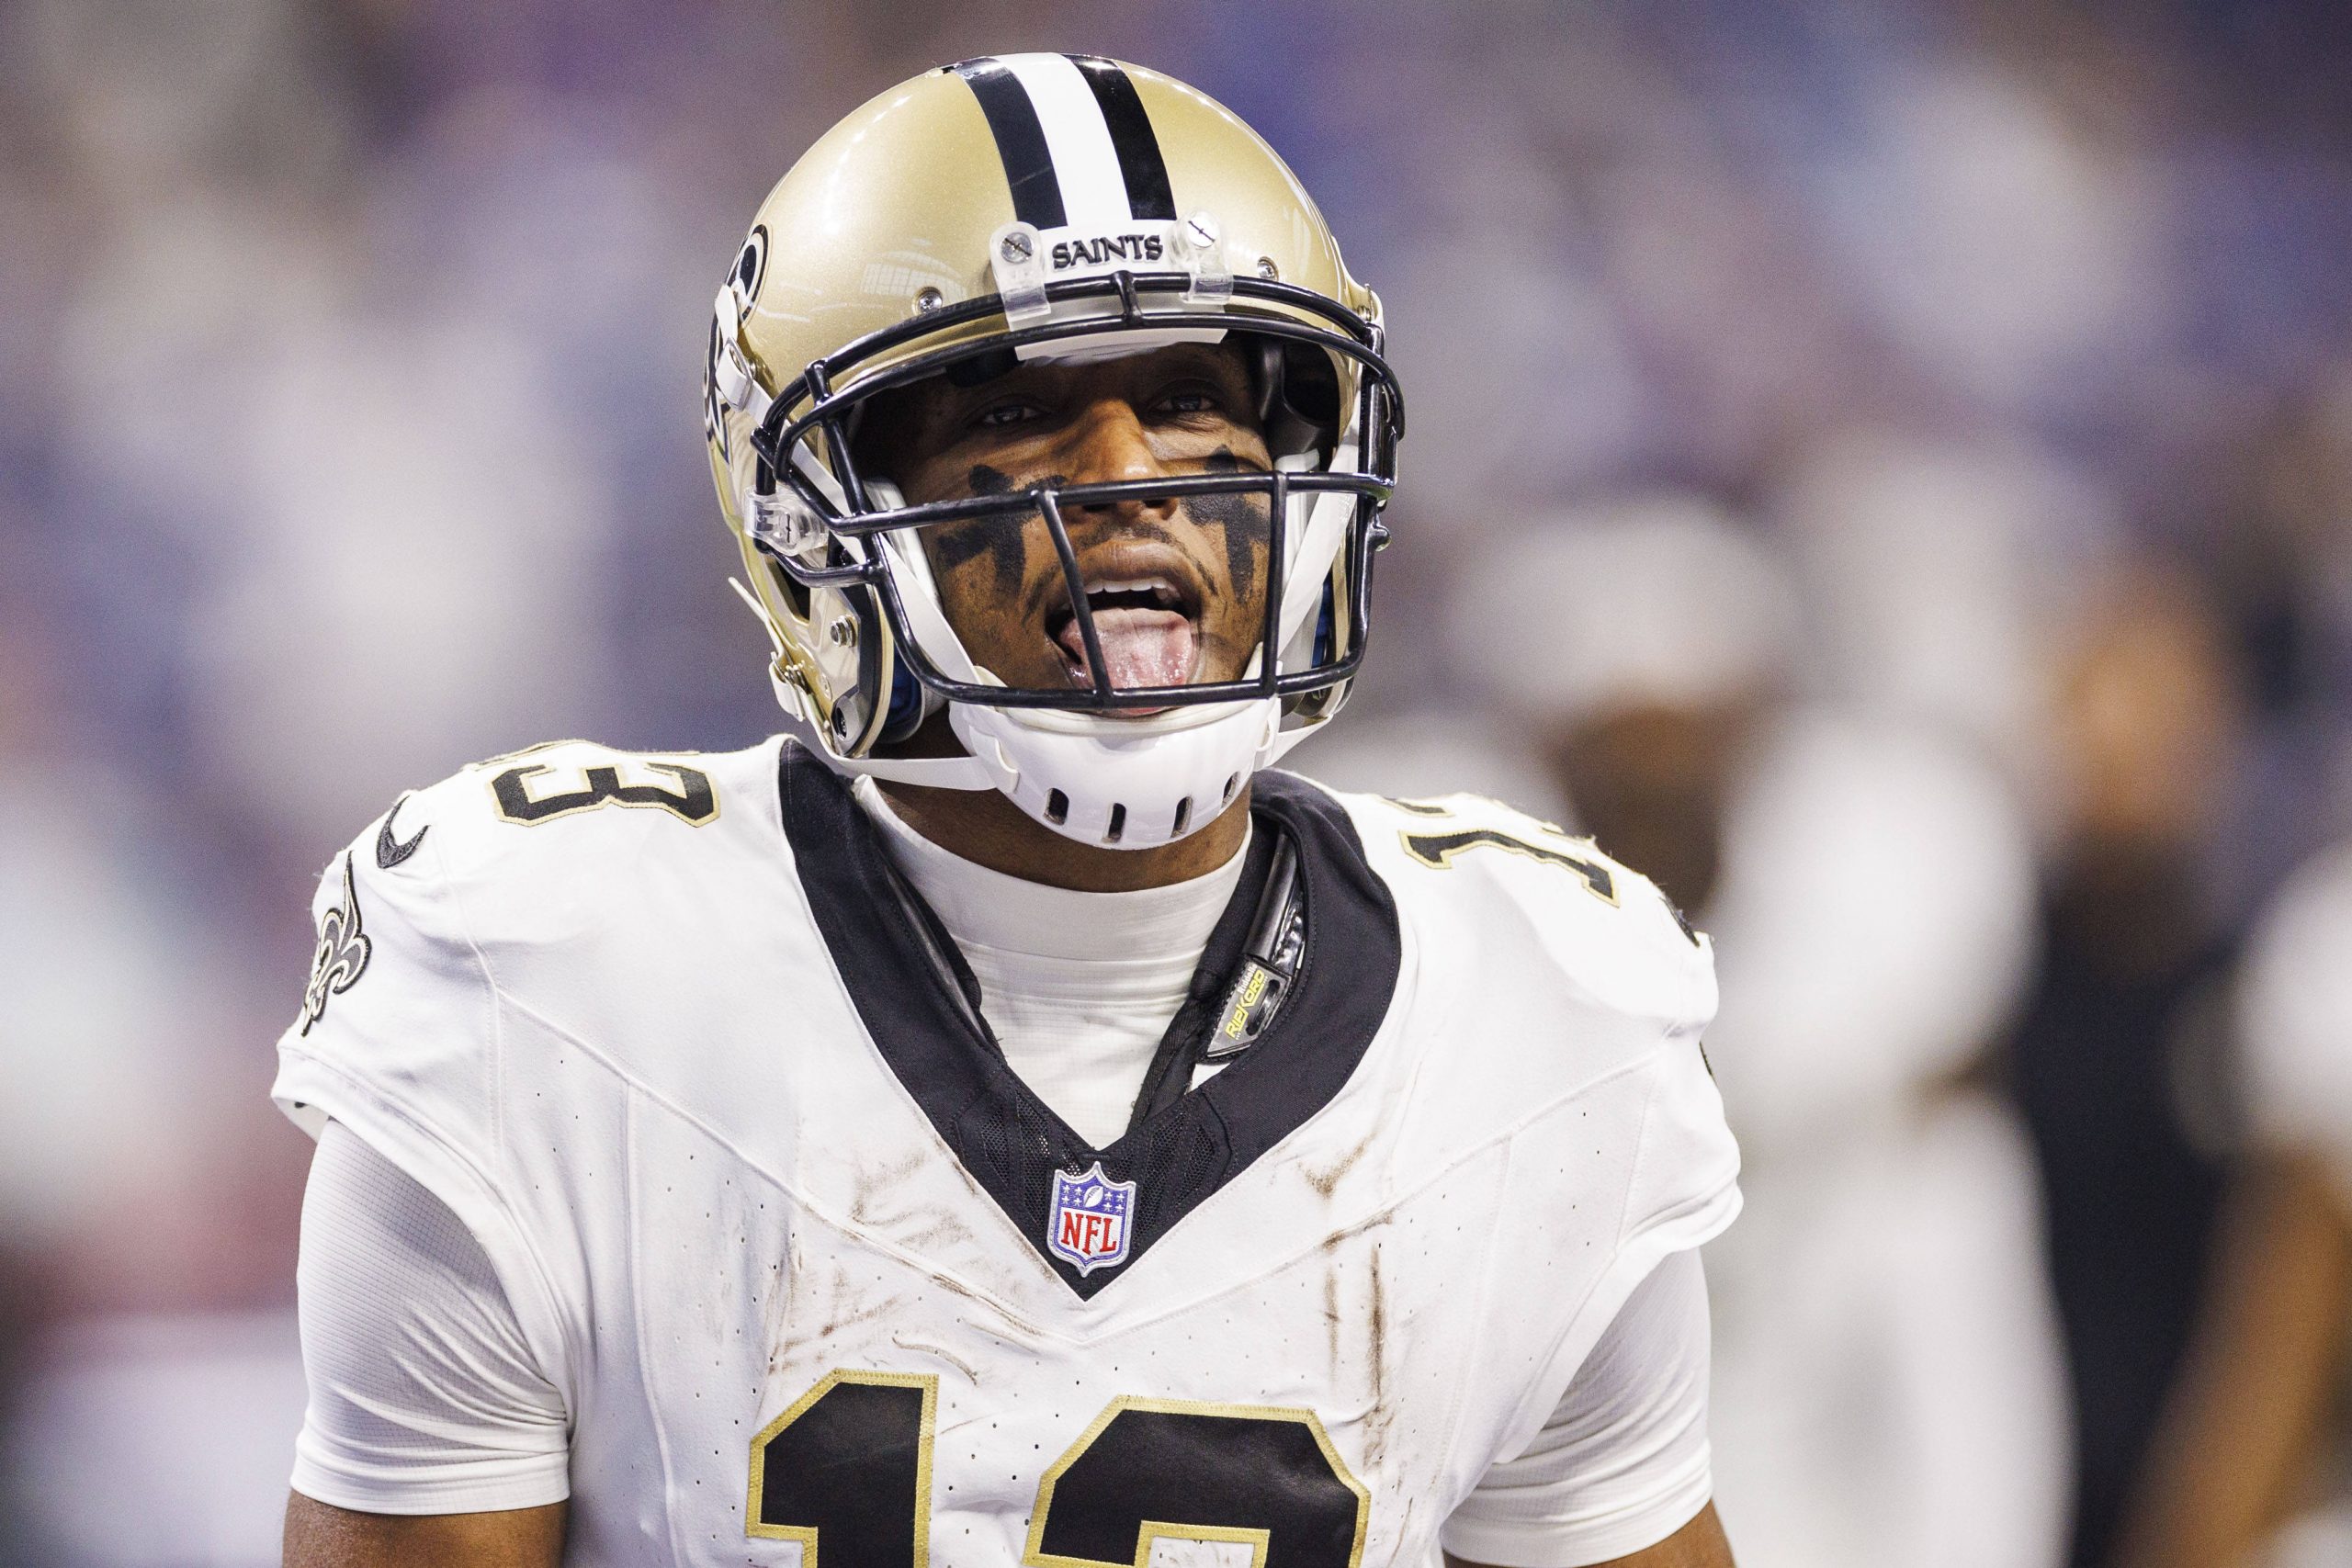 FootballR - NFL - Der NFL-Star Michael Thomas, ein Footballspieler der New Orleans Saints, hat den Mund offen.